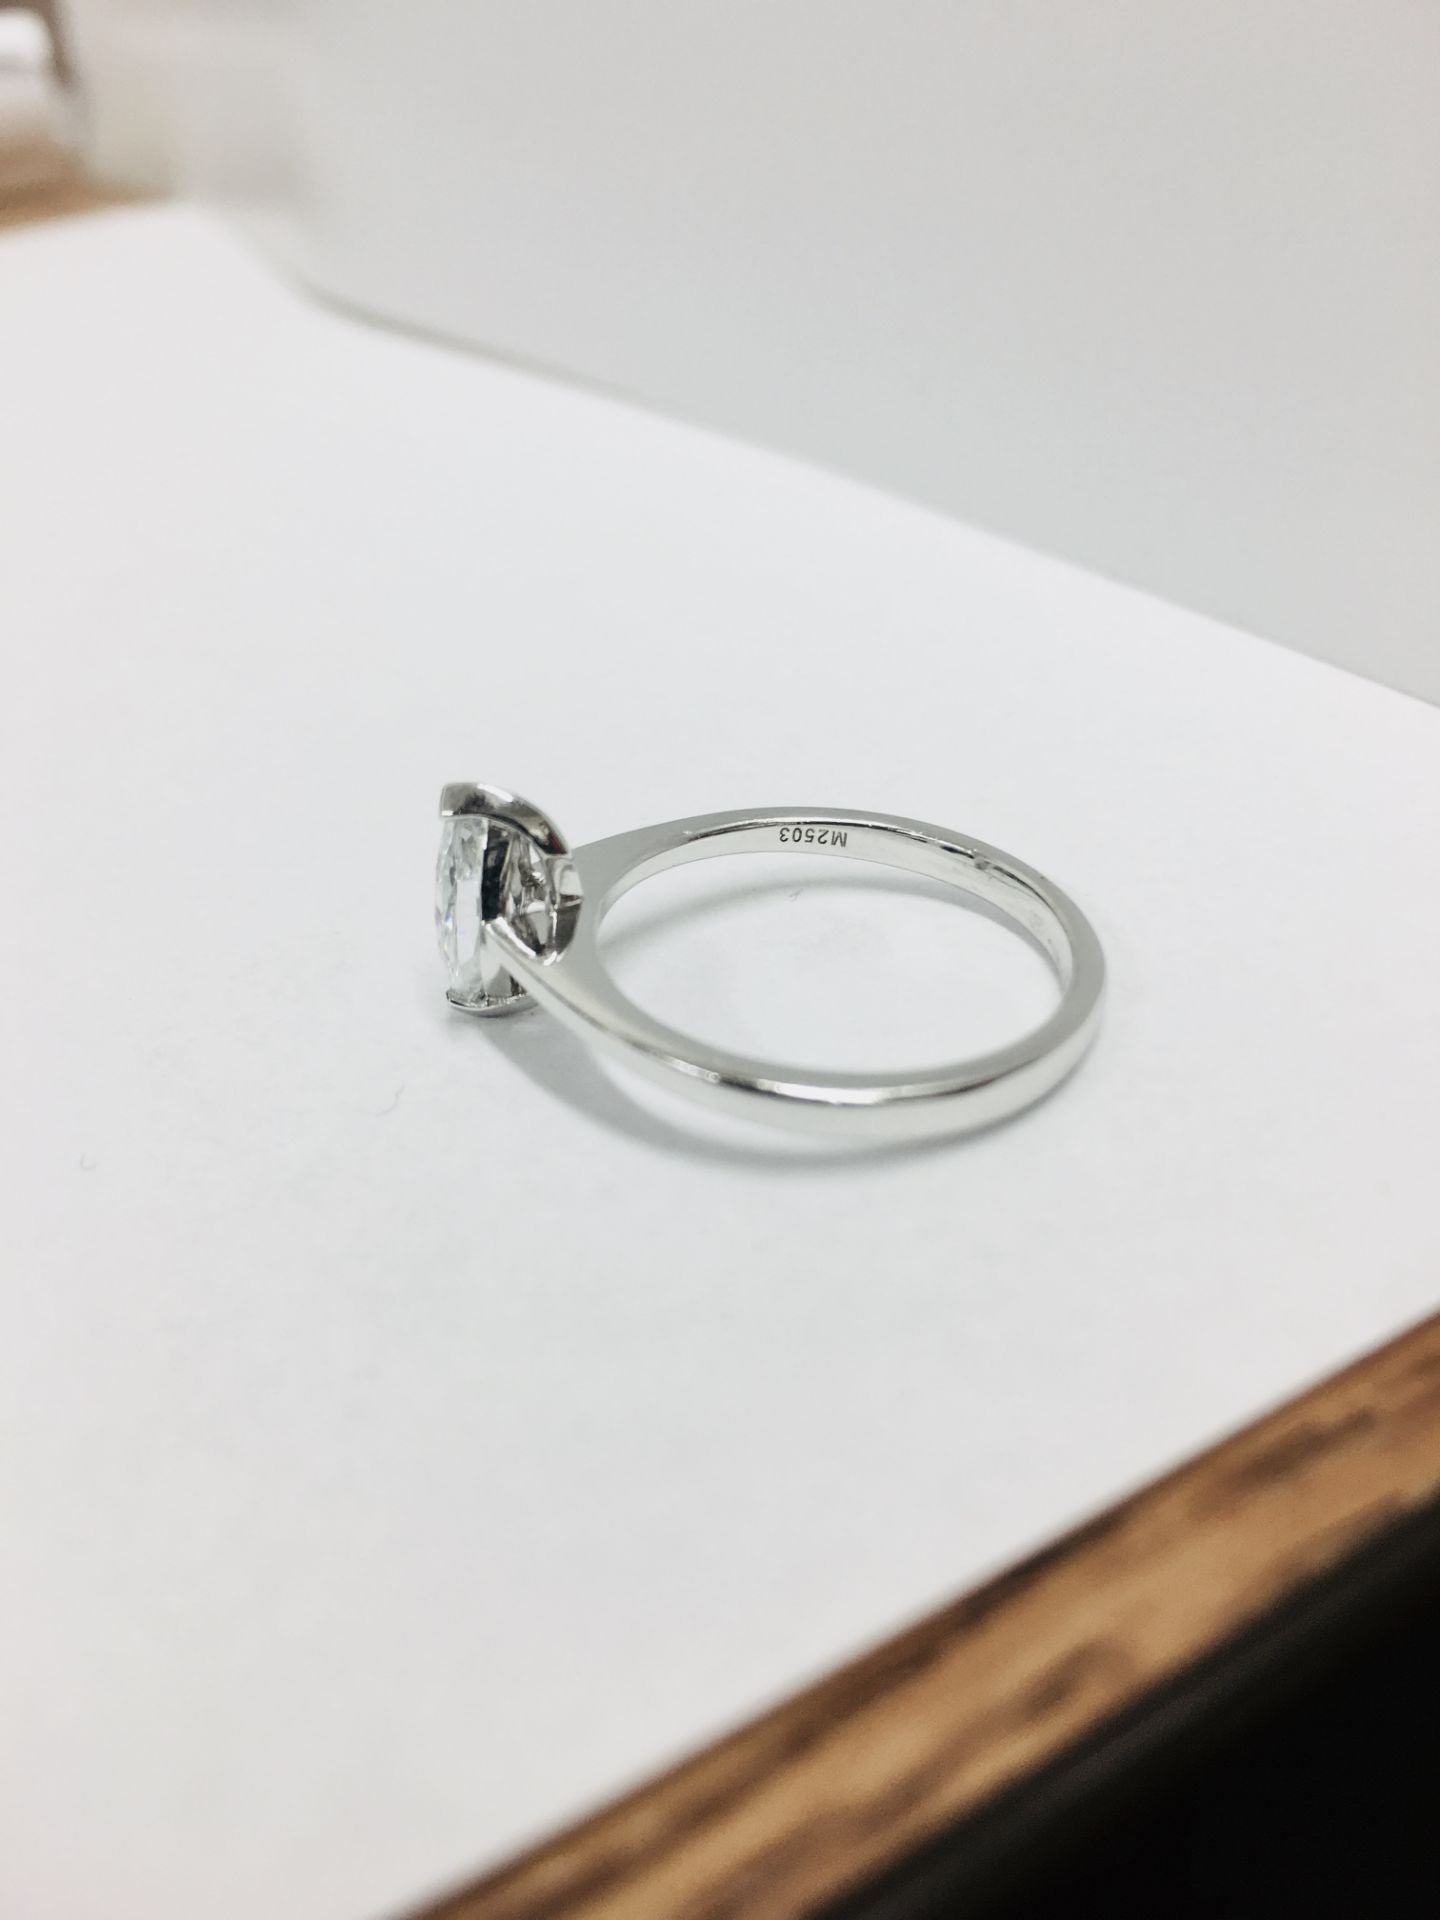 Platinum Marquis diamond soliaire ring,0.35ct marquis si clarity i colour,2.9gms platinum mount - Image 3 of 4